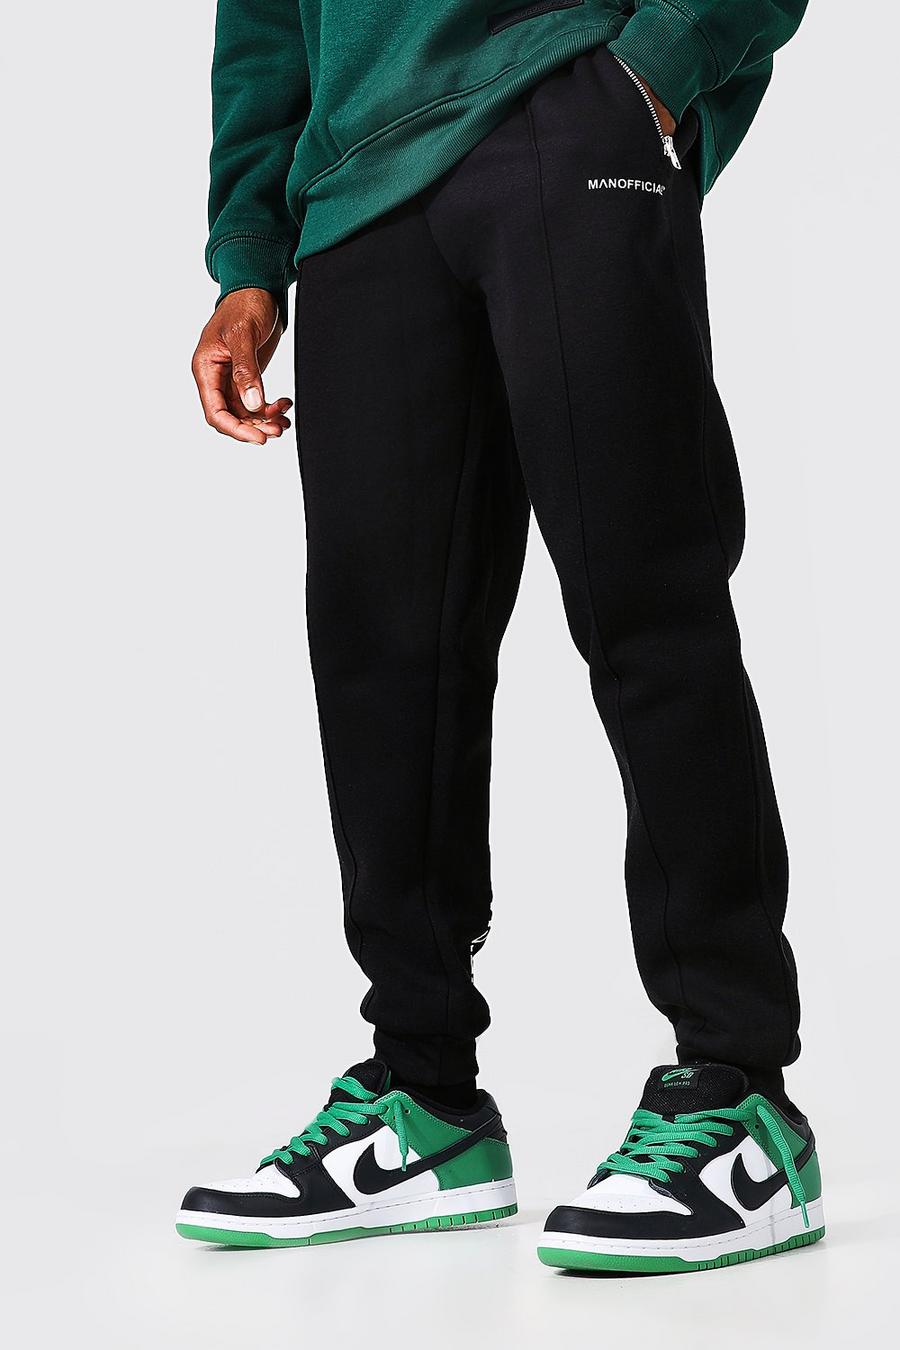 שחור מכנסי ריצה עם קפל והדפס Man Official בגב image number 1